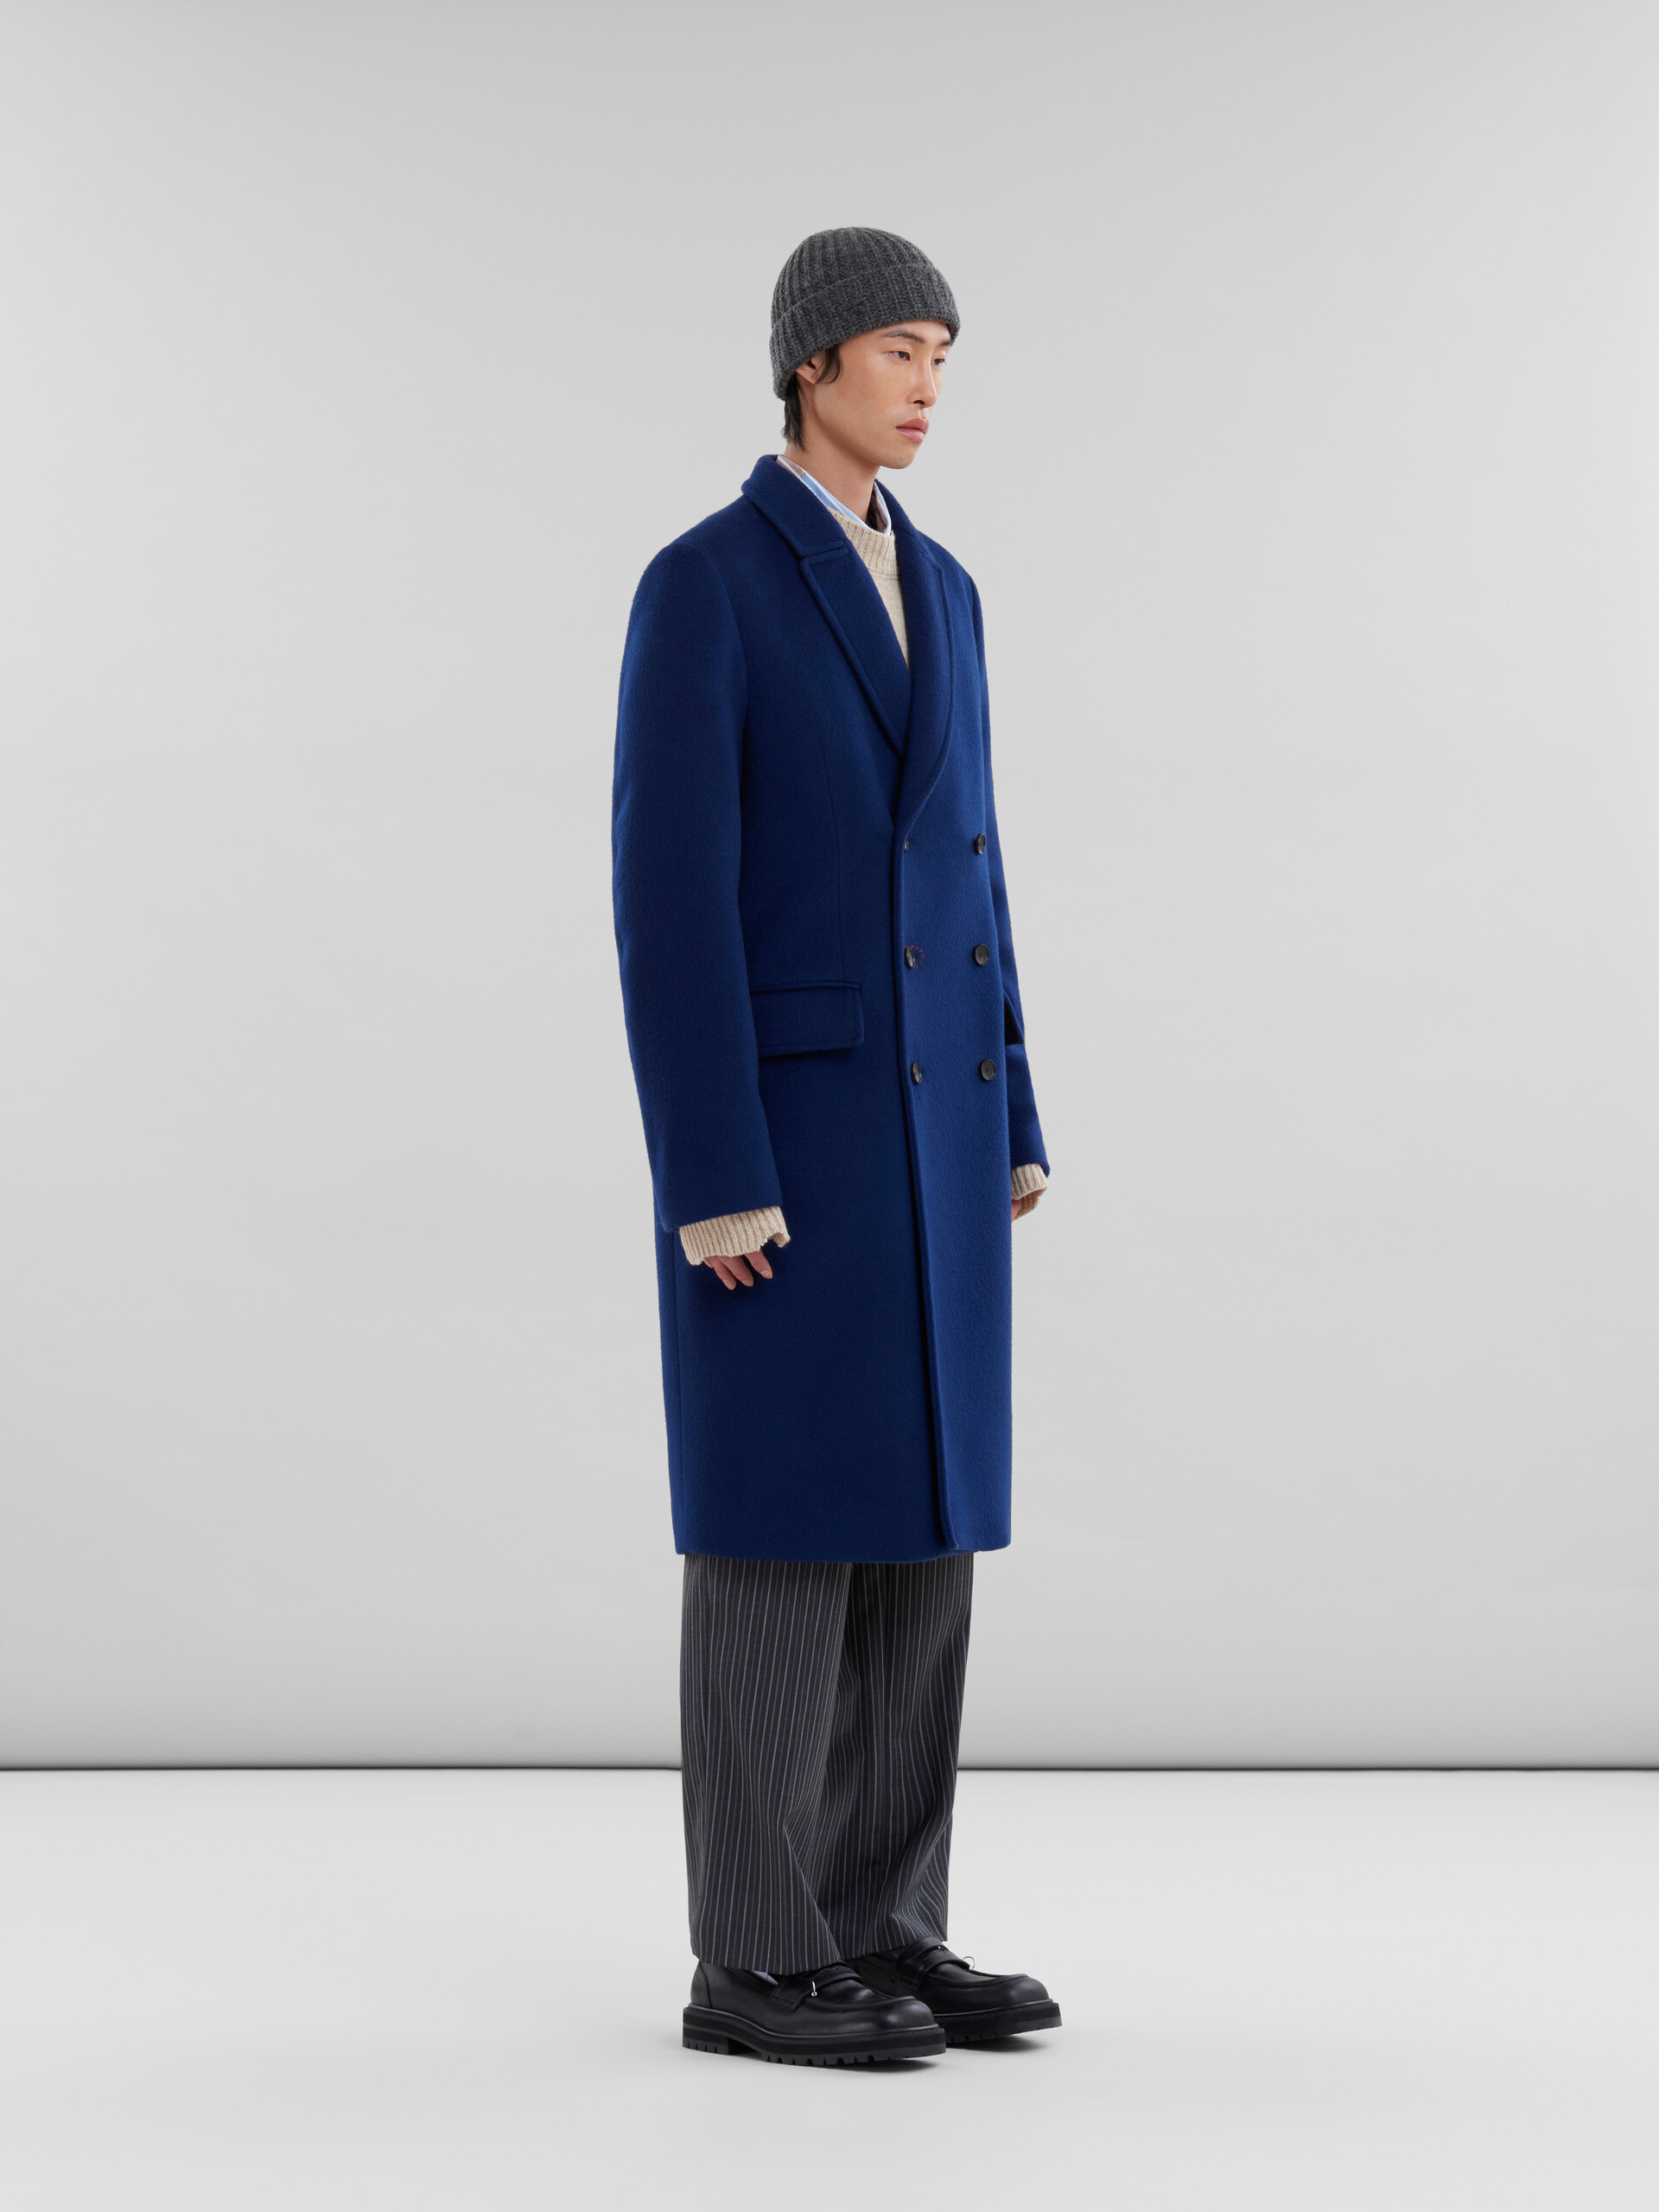 Manteau à double boutonnage en feutre bleu avec effet raccommodé Marni - Vestes - Image 6